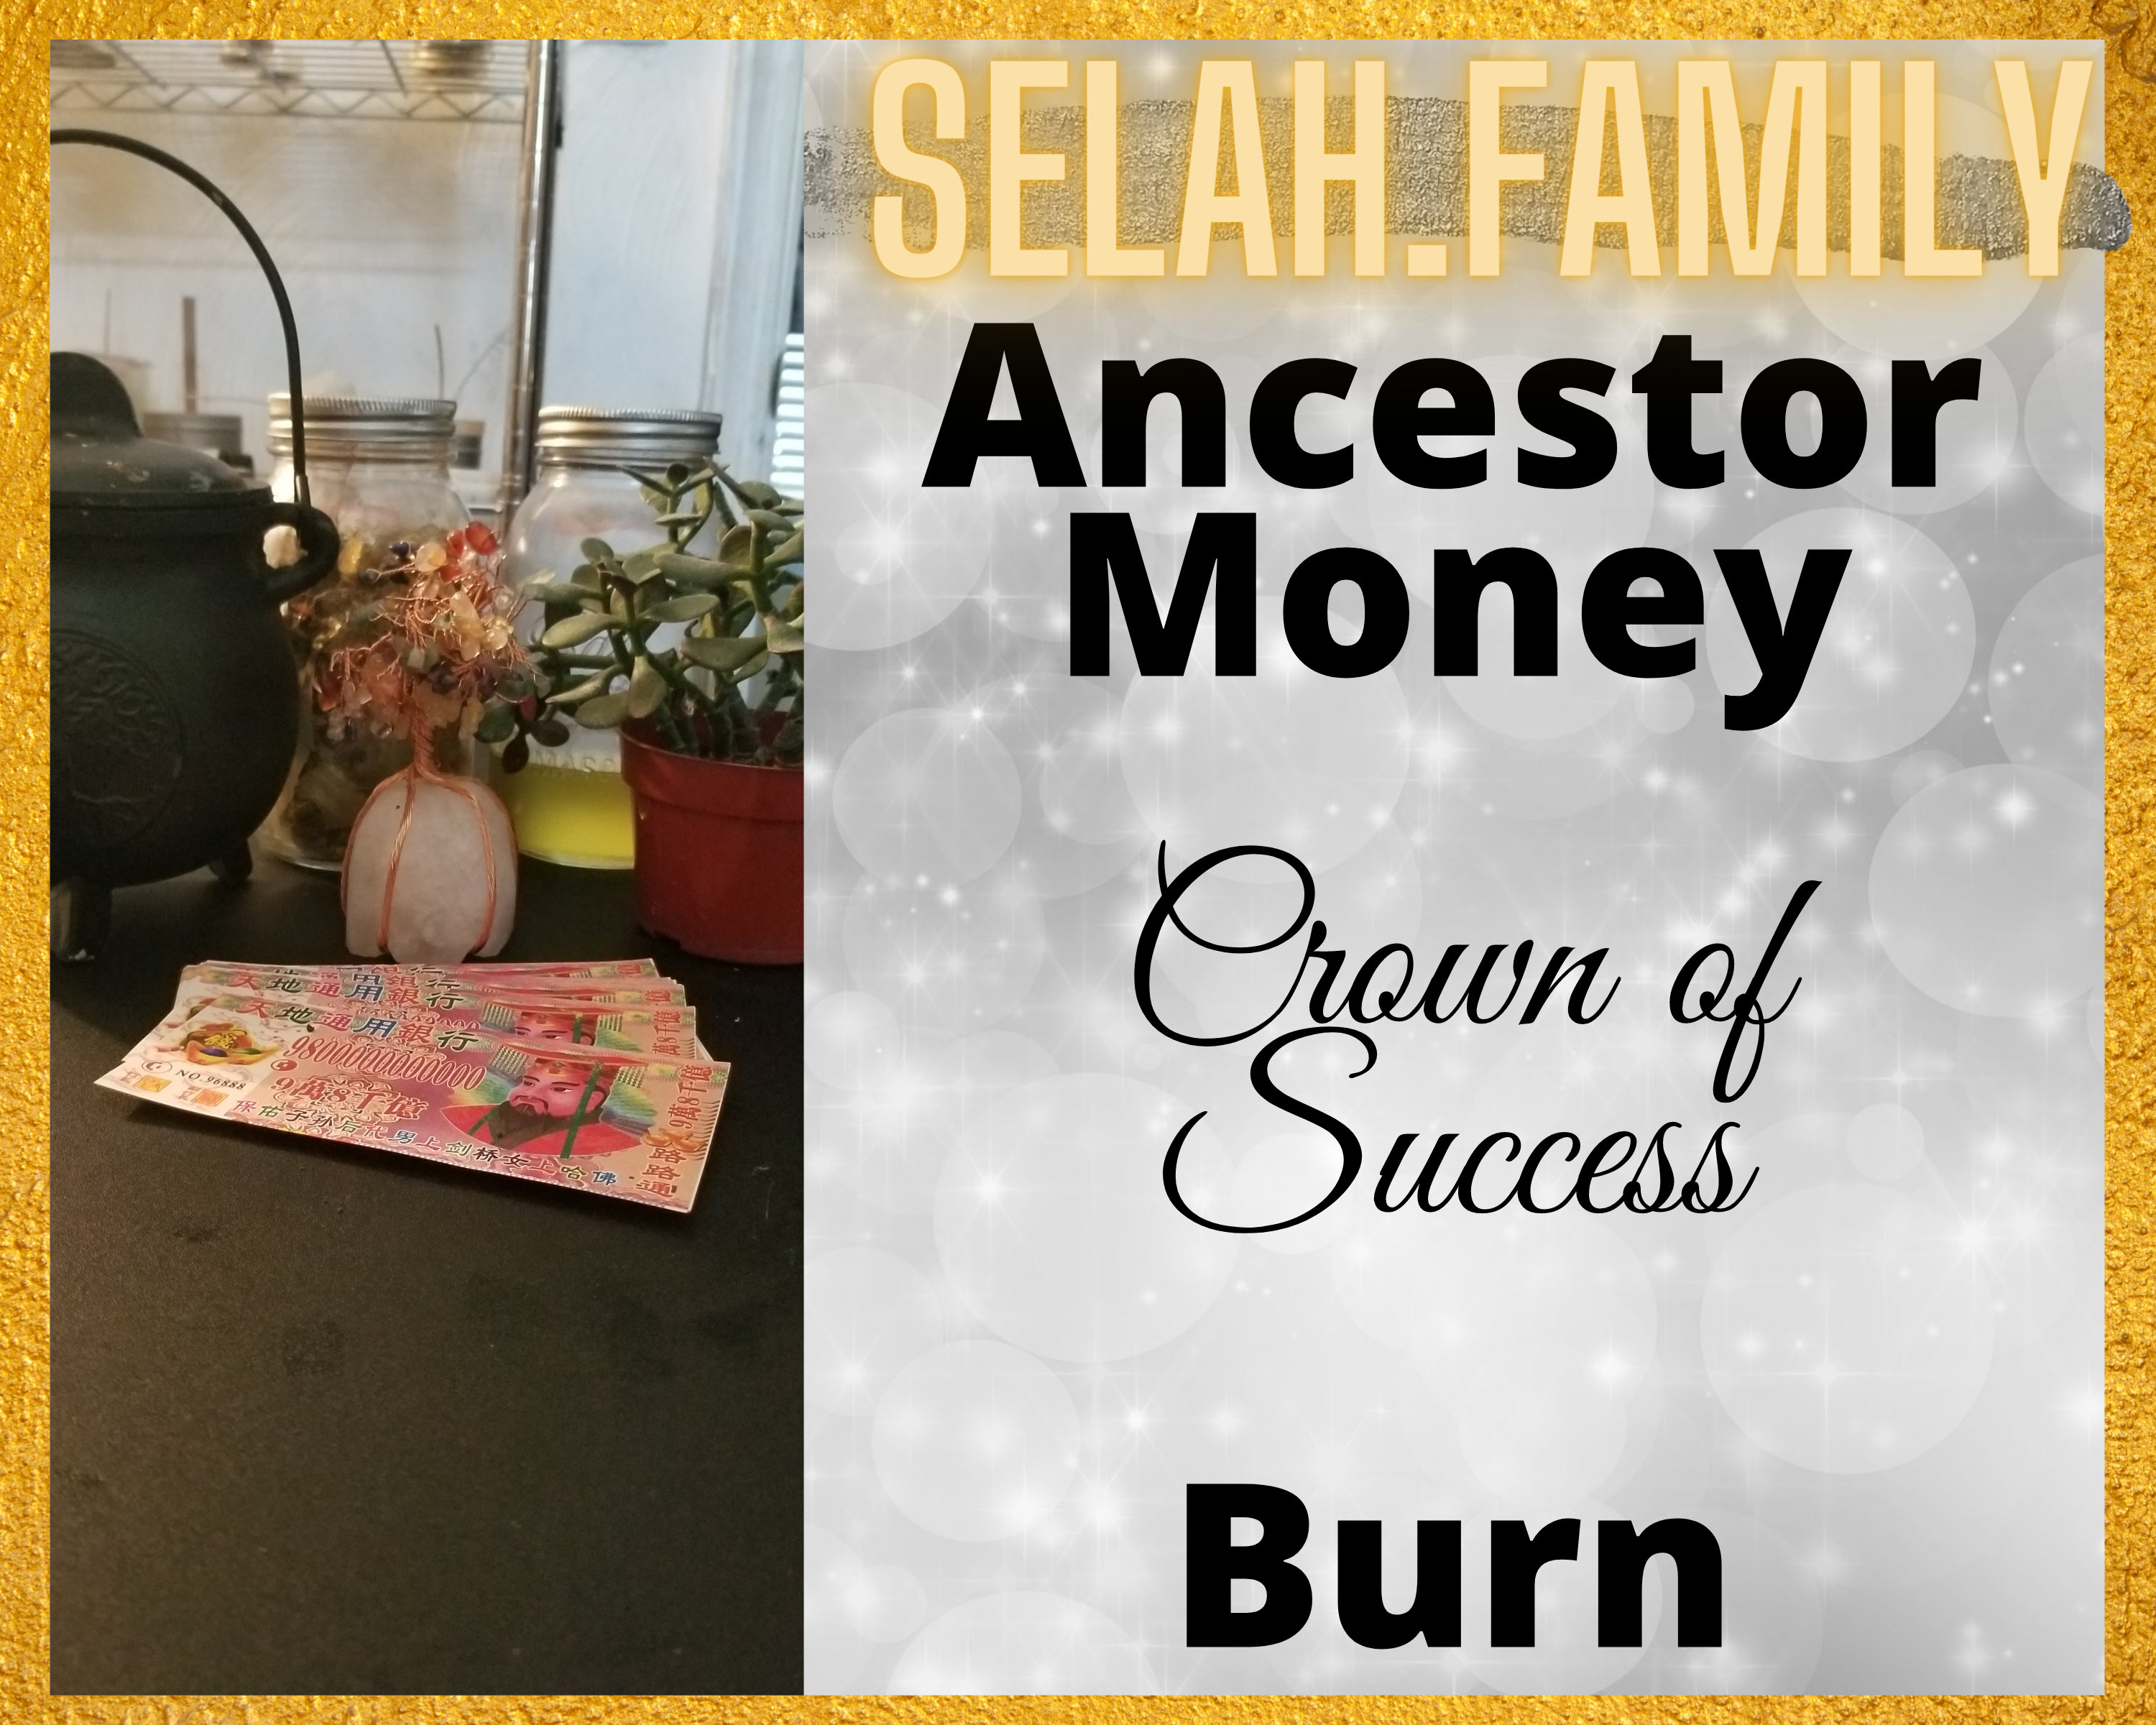 Ancestor Money Spiritual Soap – The Ashé Shop